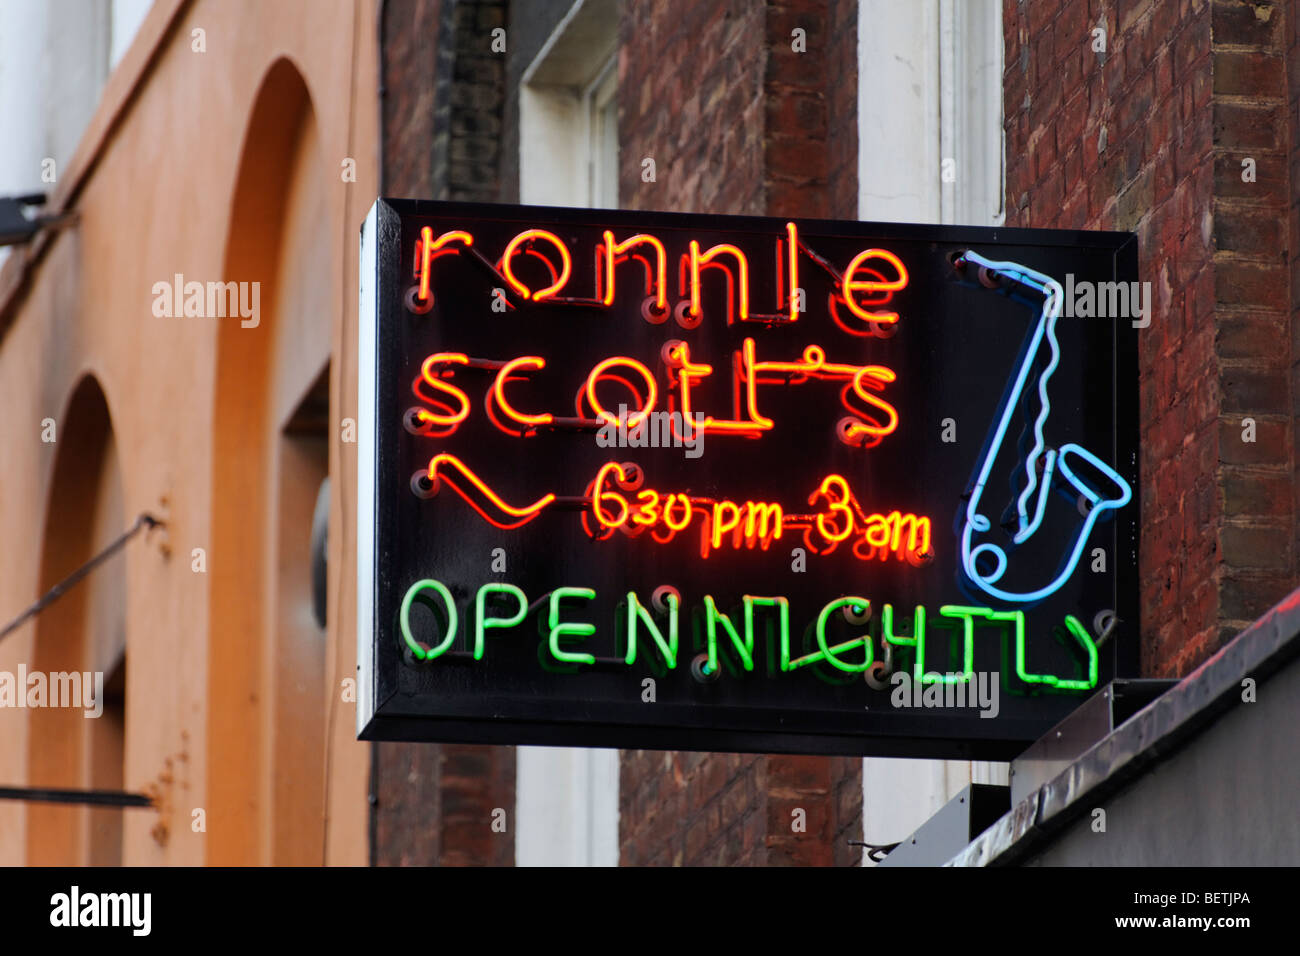 Ronnie Scott's jazz club. Soho. London. Britain. UK Stock Photo